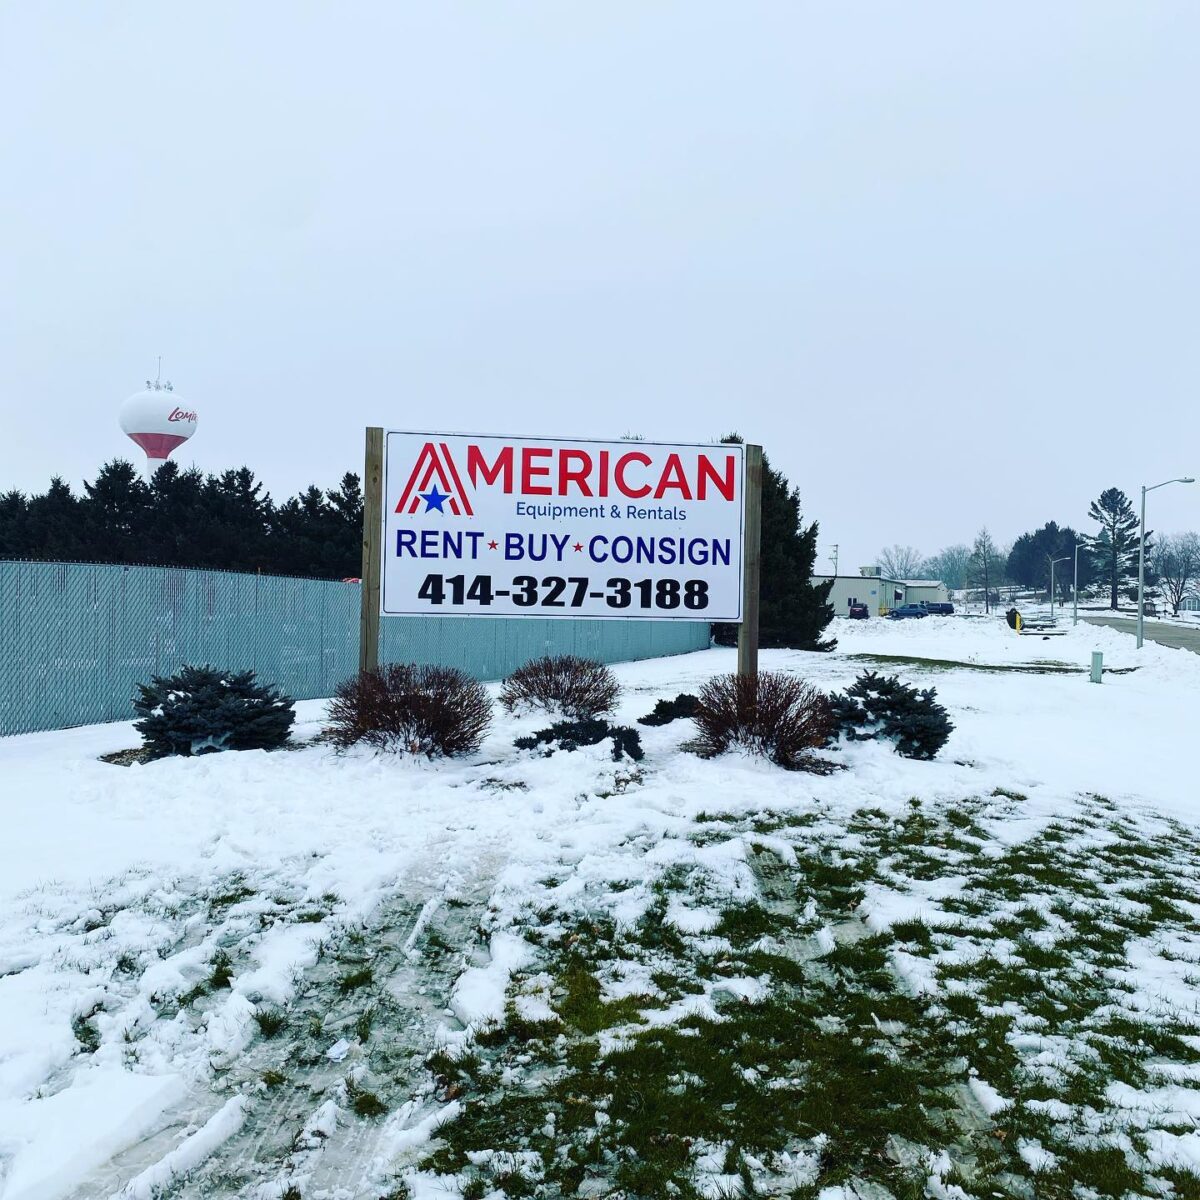 American Restaurant Equipment in West Allis, Wisconsin